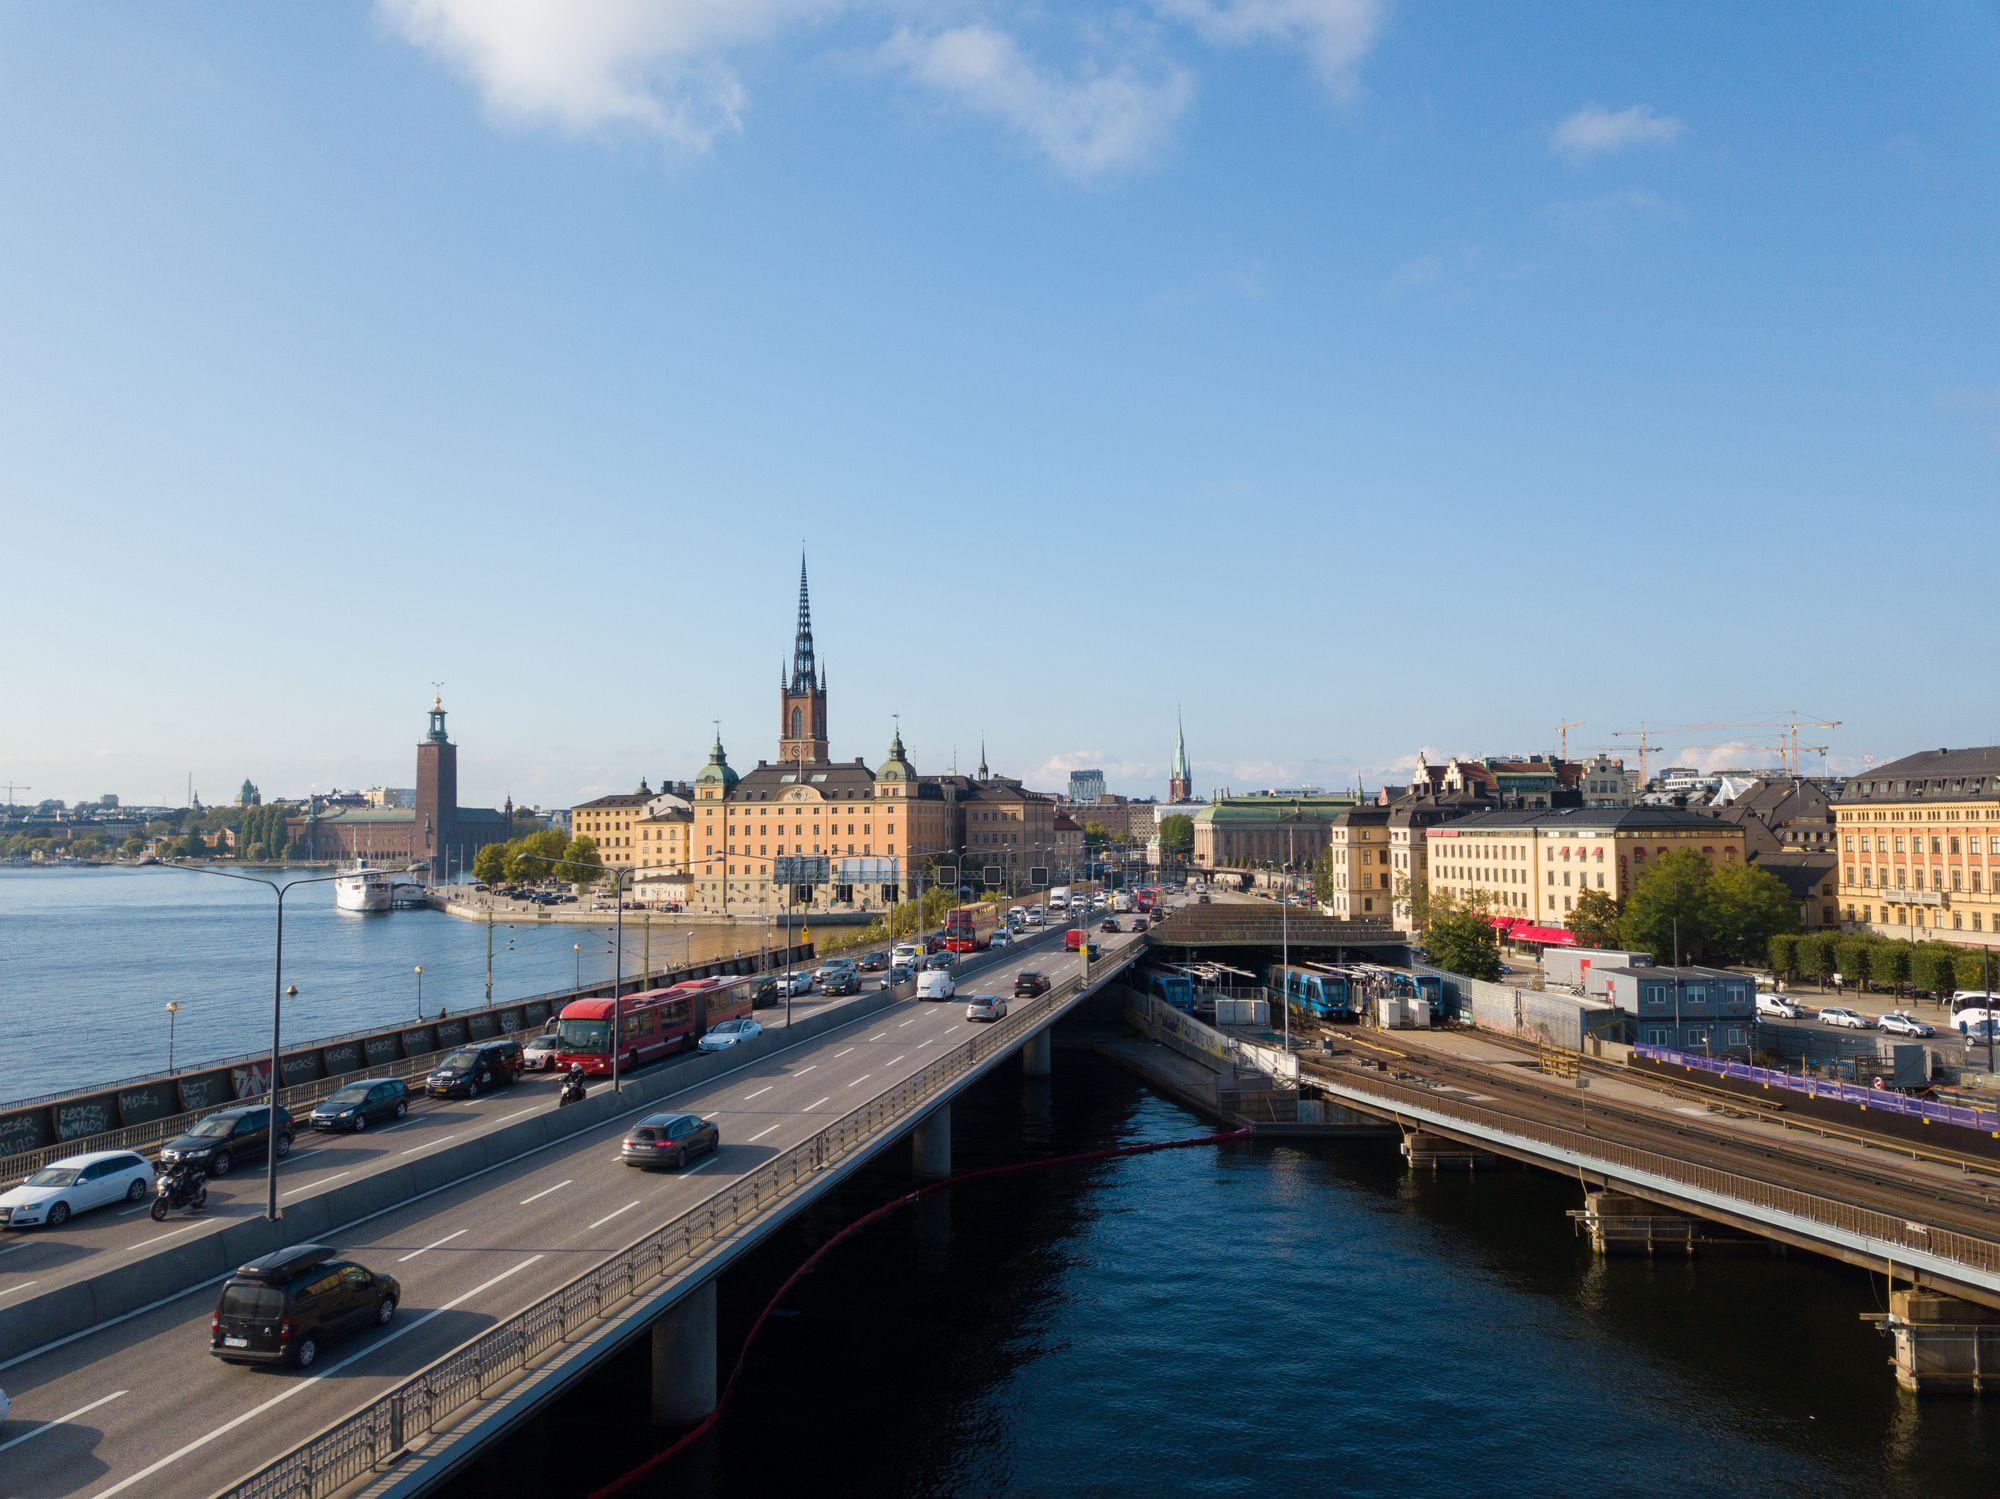 ทำไมประเทศสังคมนิยมอย่างสวีเดน ถึงมีมหาเศรษฐีเพิ่มมากขึ้น ?